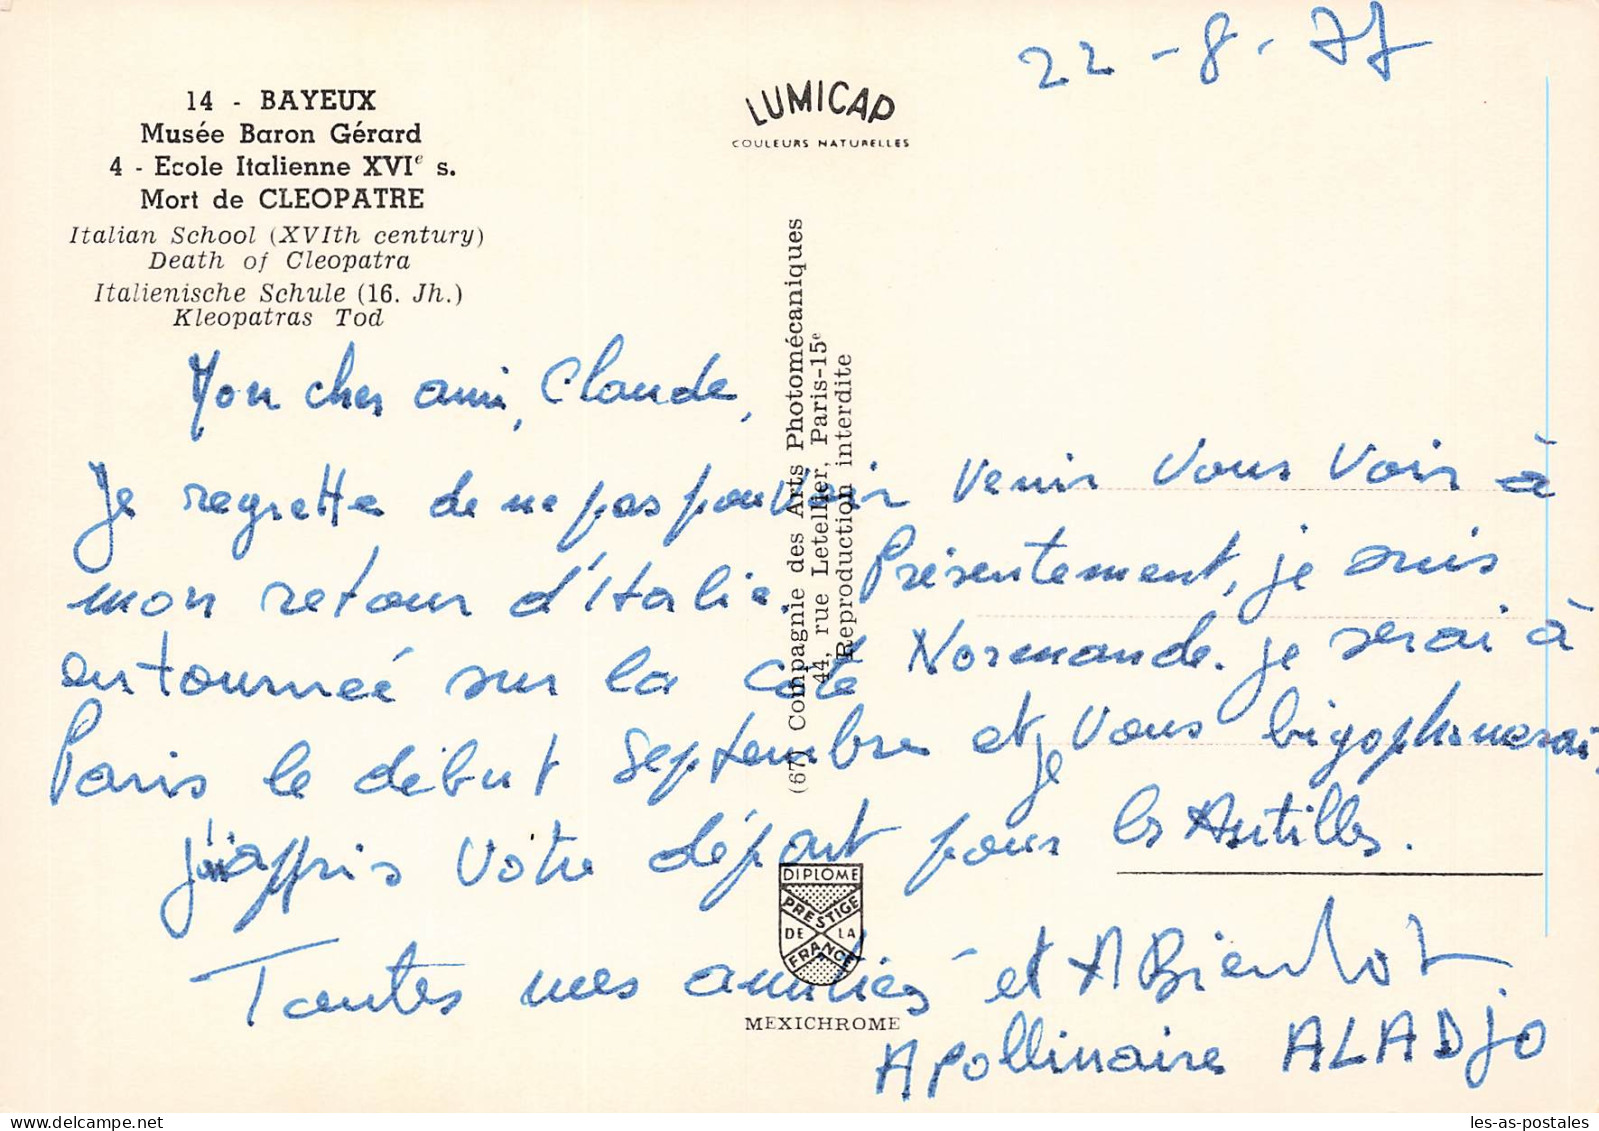 14 BAYEUX MUSEE BARON GERARD - Bayeux